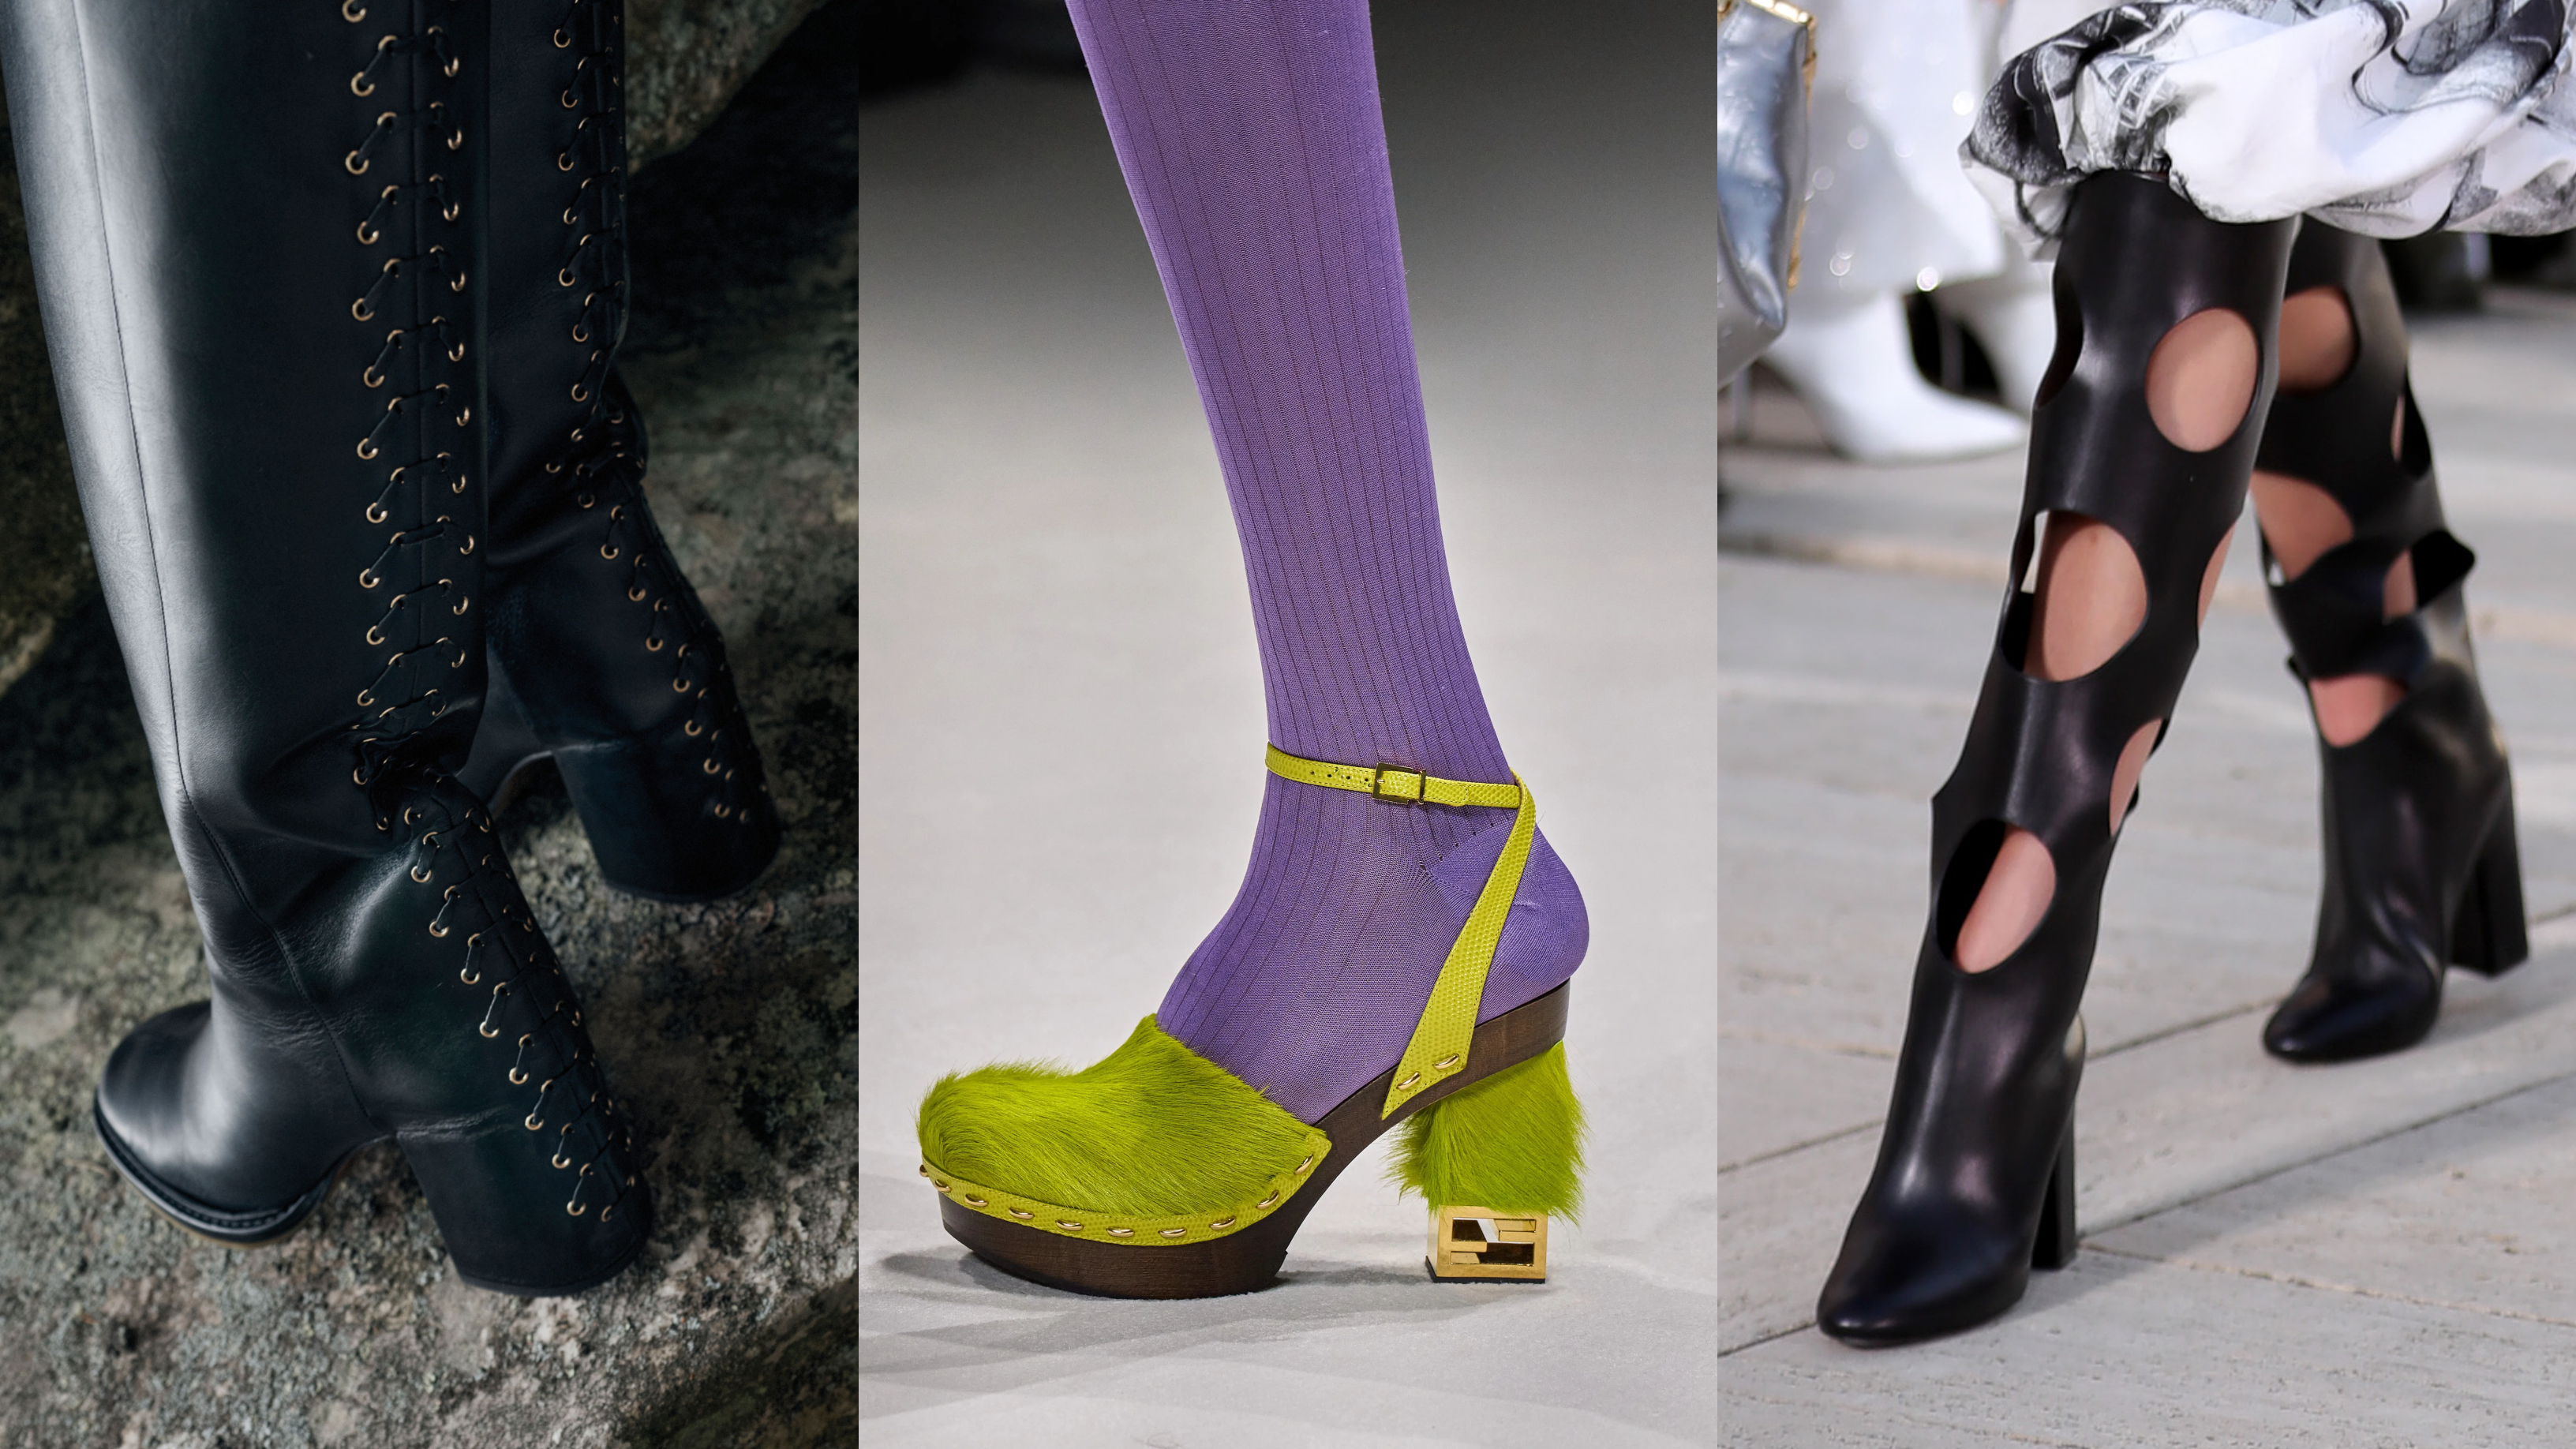 Louis Vuitton Women's Bow Motif Open Toe Heels